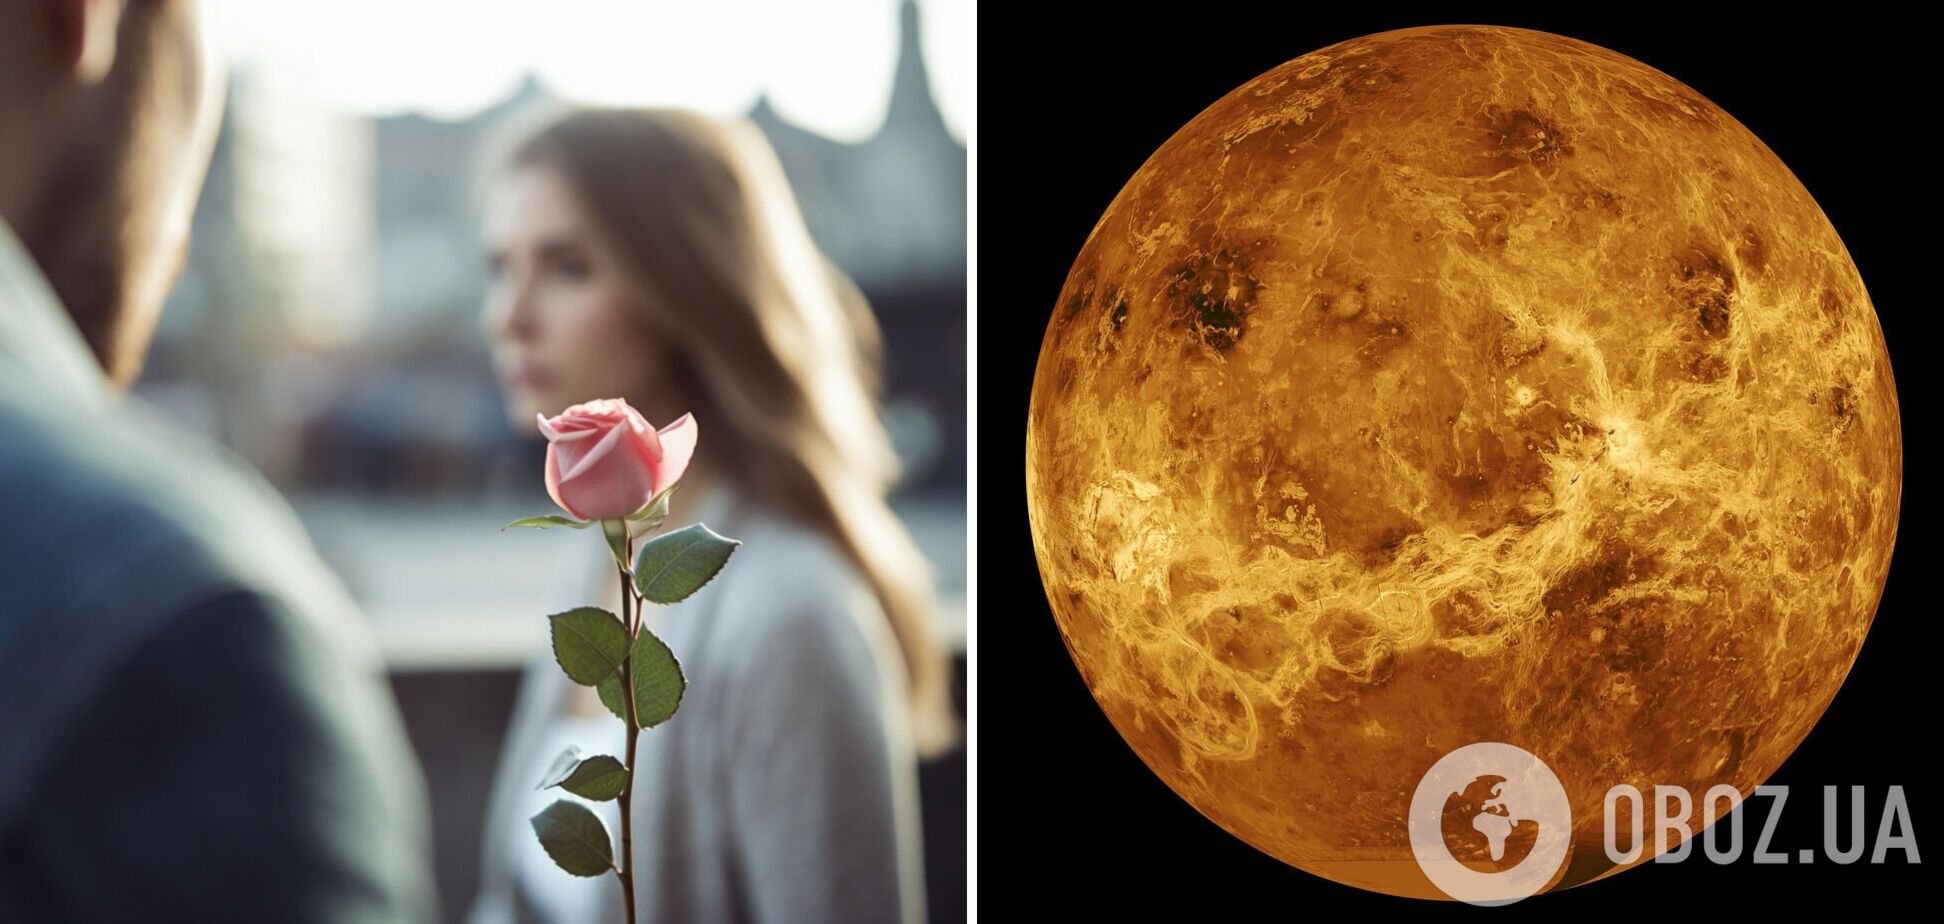 Венера кардинально изменит личную жизнь: какие знаки ждет 'революция' в июне-октябре